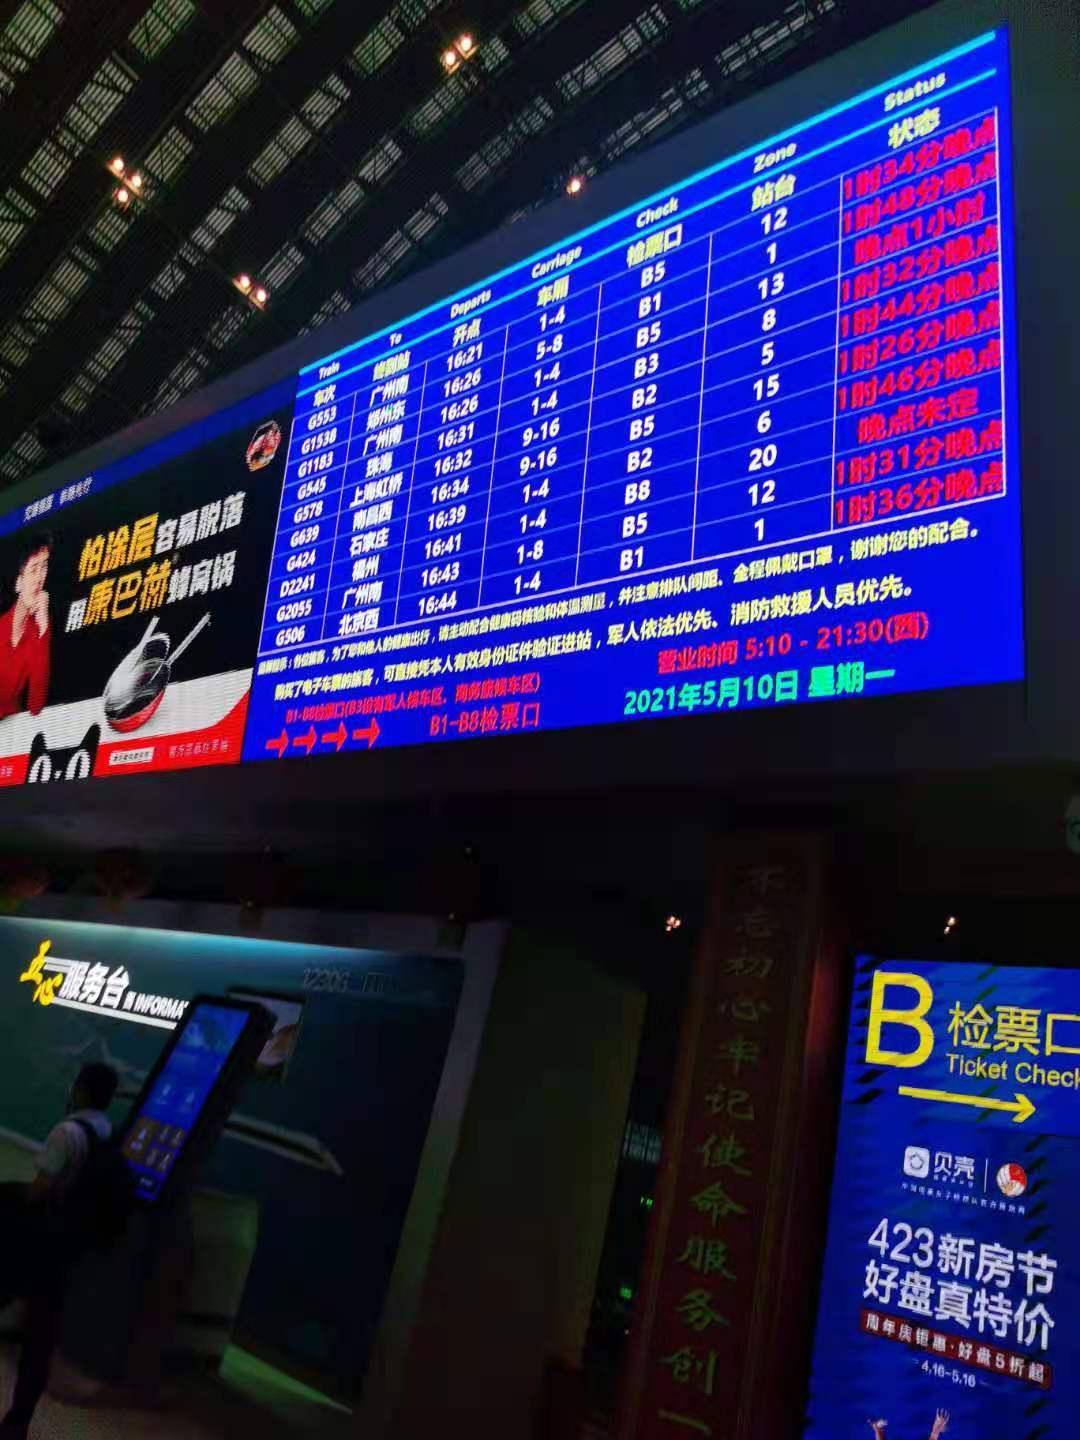 5月10日,武汉火车站候车厅大屏显示,多班列车晚点